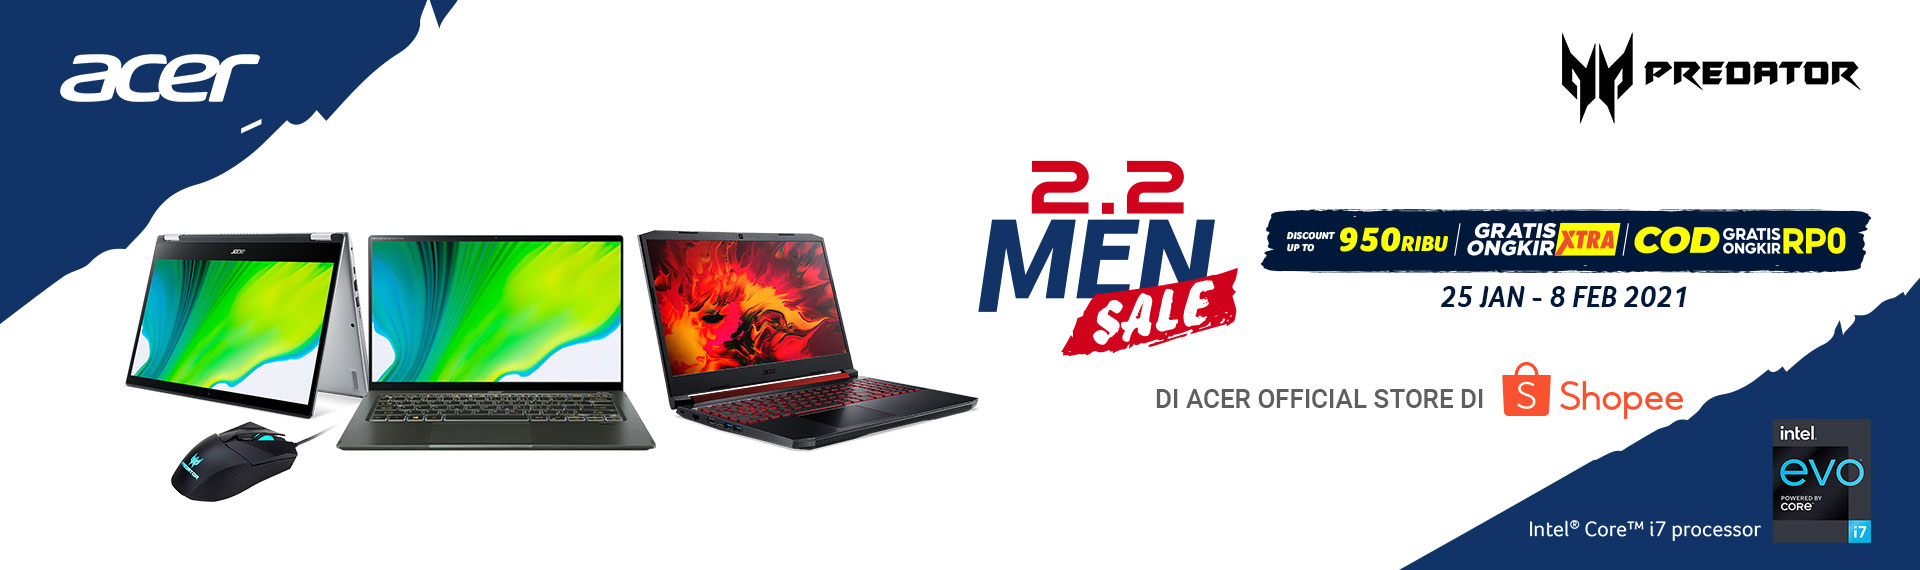 Shopee 2.2 Men Sale, Promo Laptop Acer Potongan Harga Rp950.000!